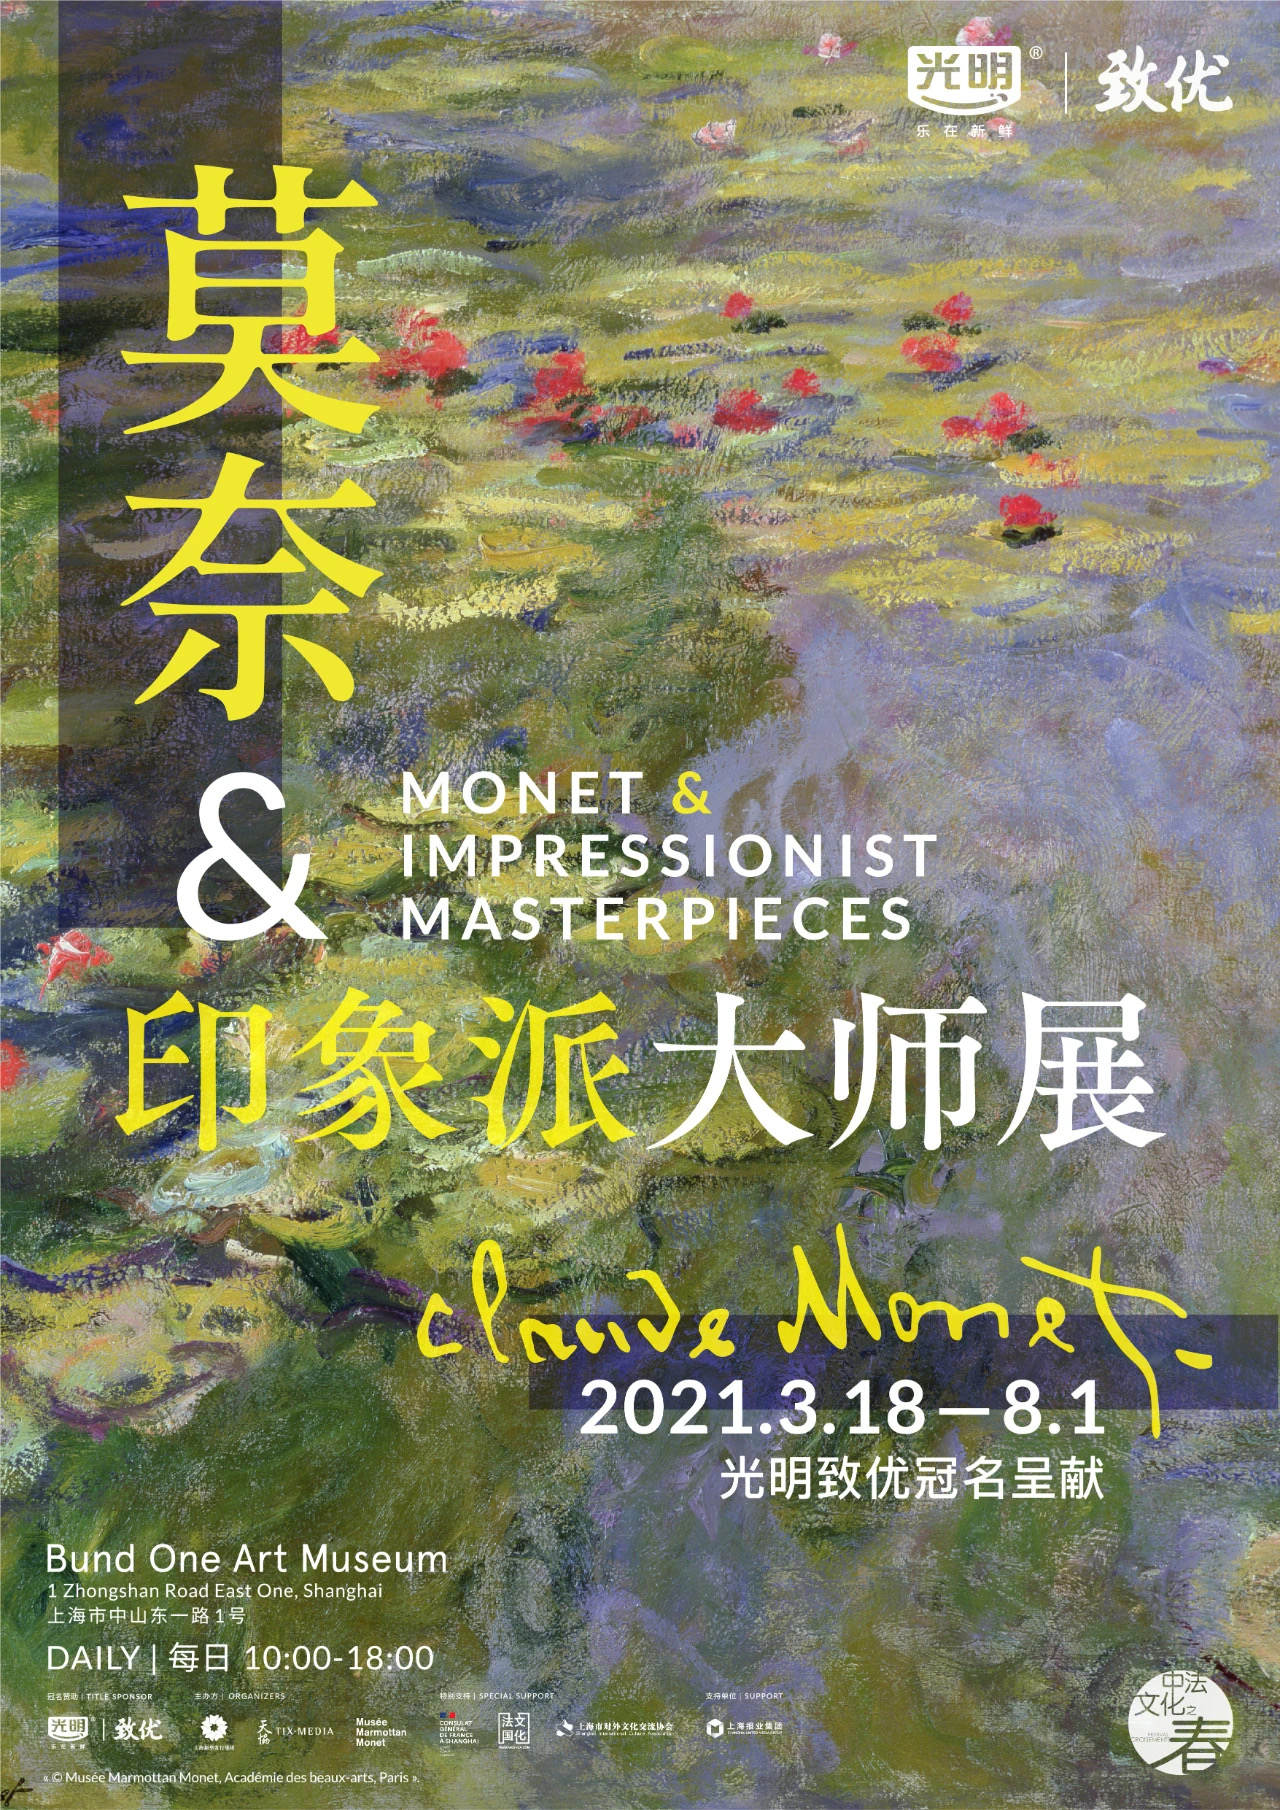 「莫奈与印象派大师」特展将于 3 月 18 日在上海开展